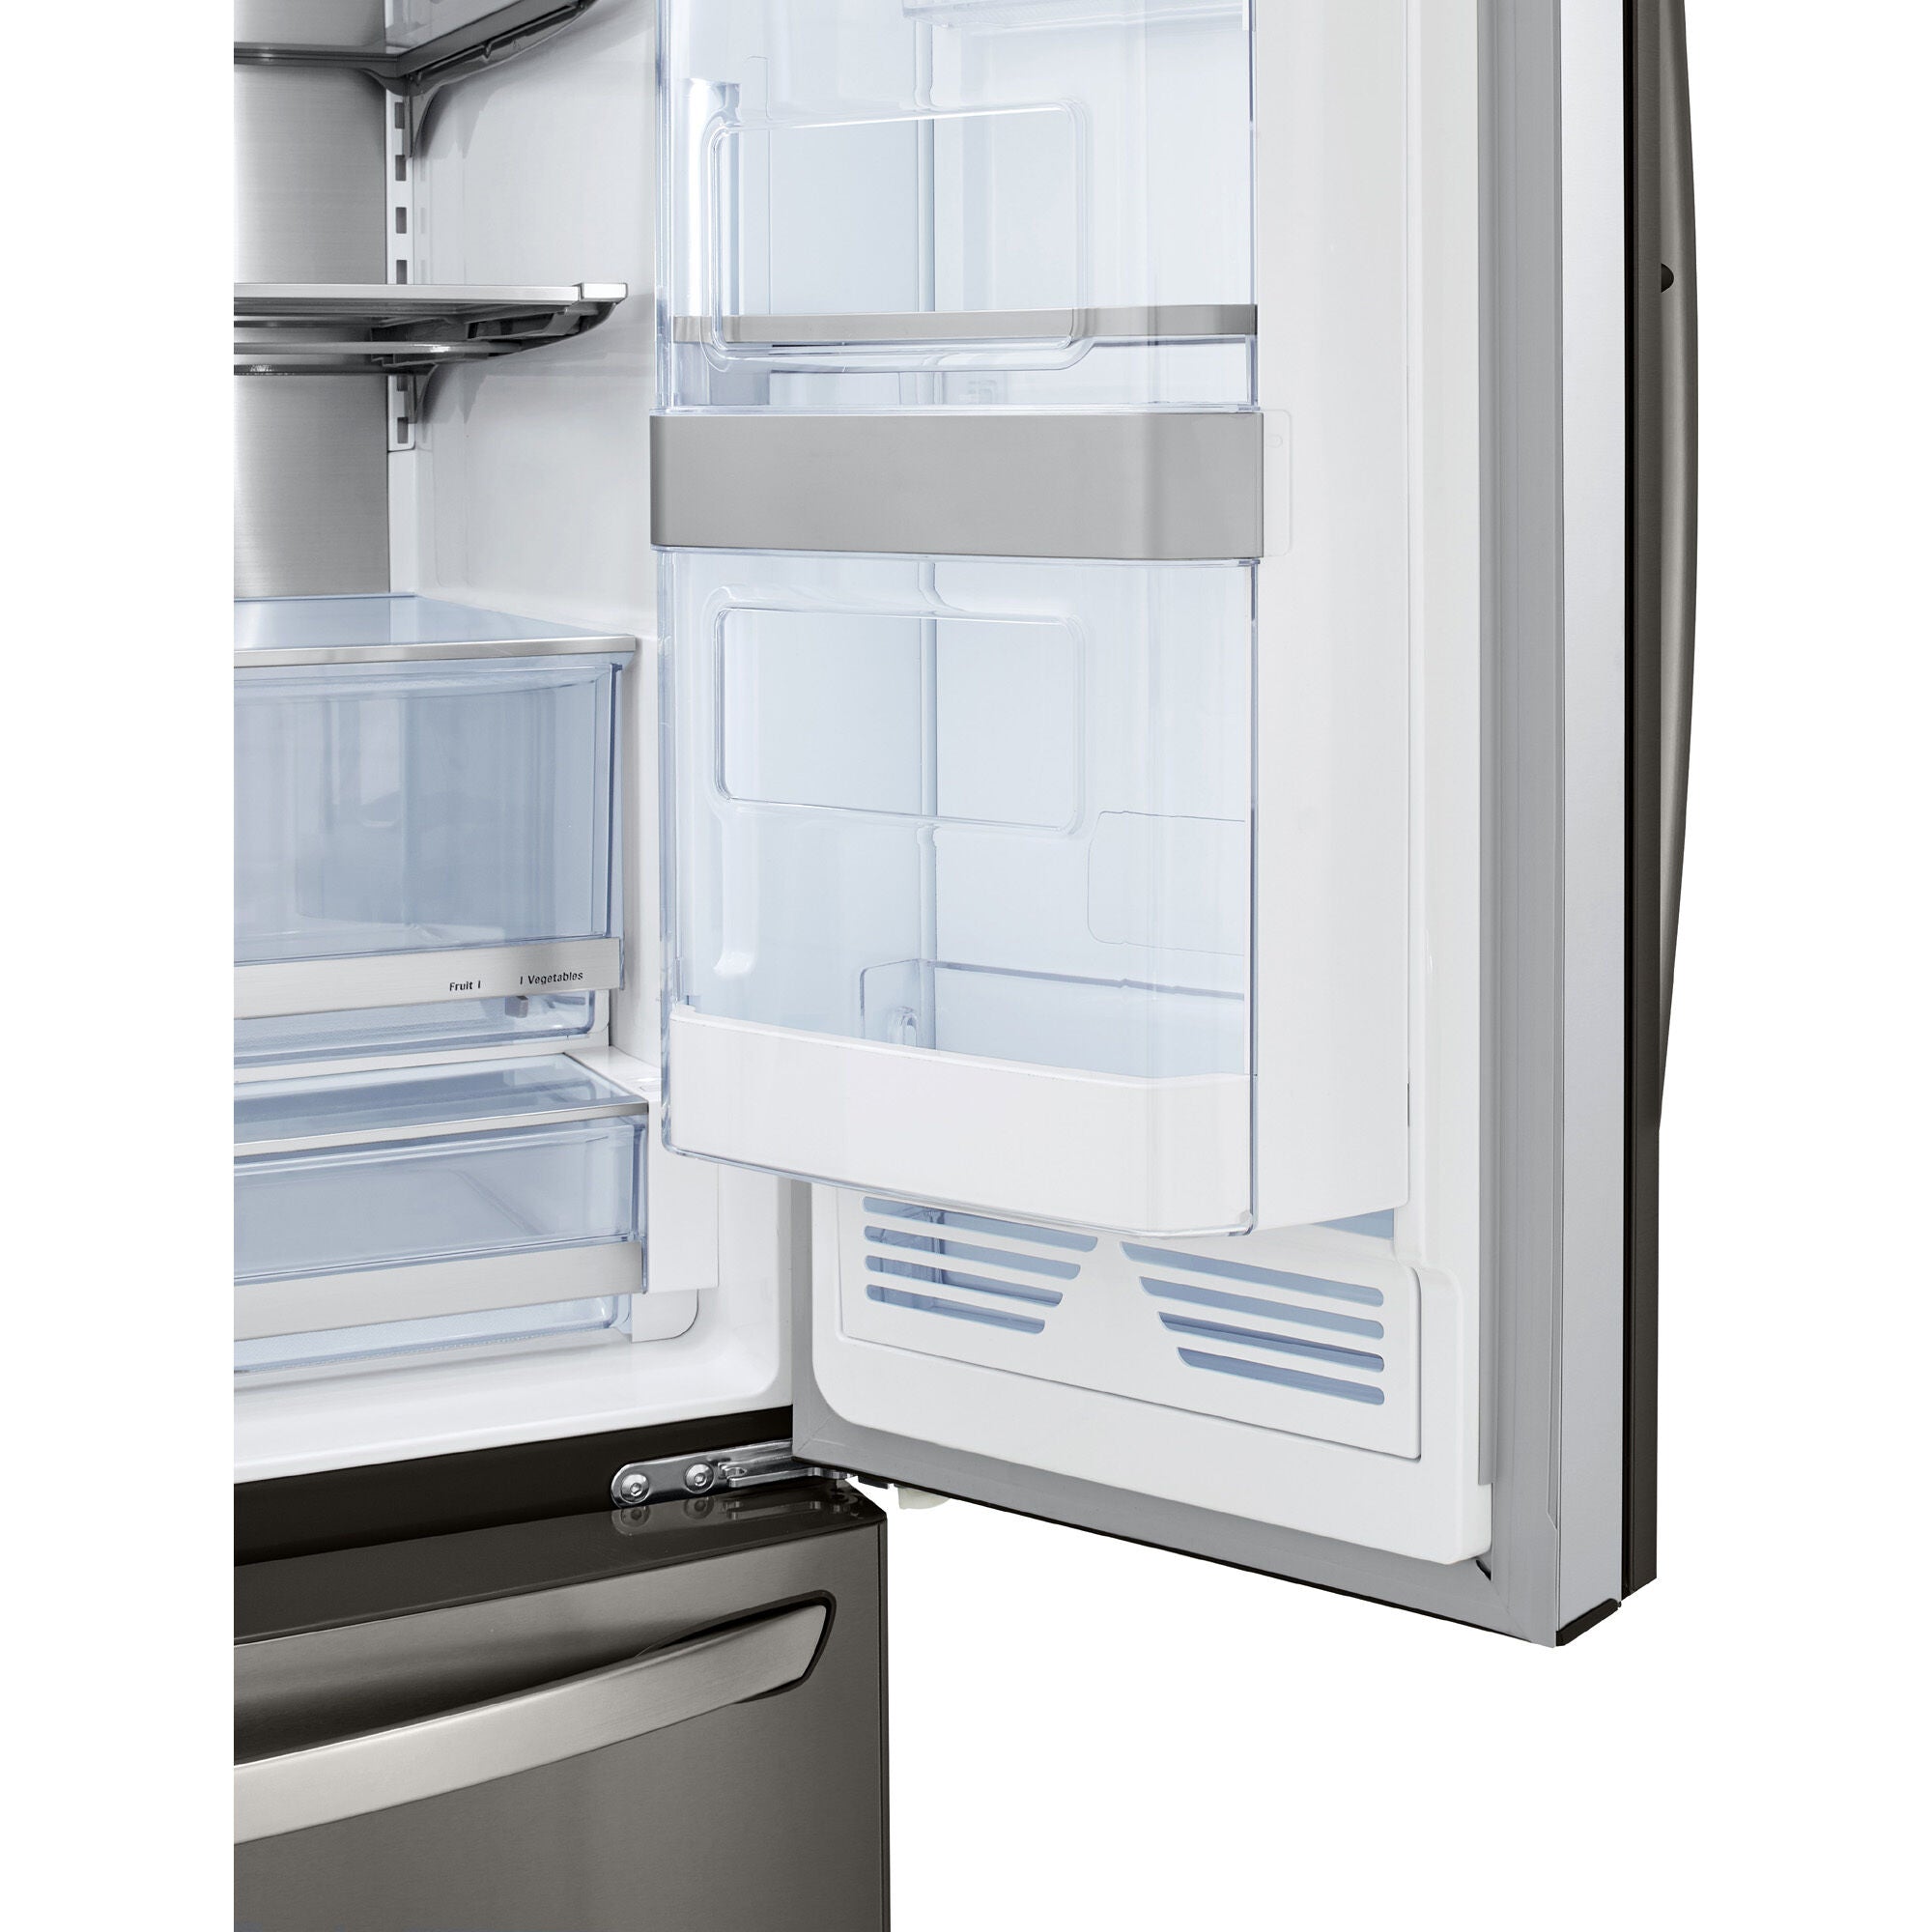 LG 36 Inch 3-Door French Door Refrigerator in Black Stainless Steel 30 Cu. Ft. (LRFDS3016D)